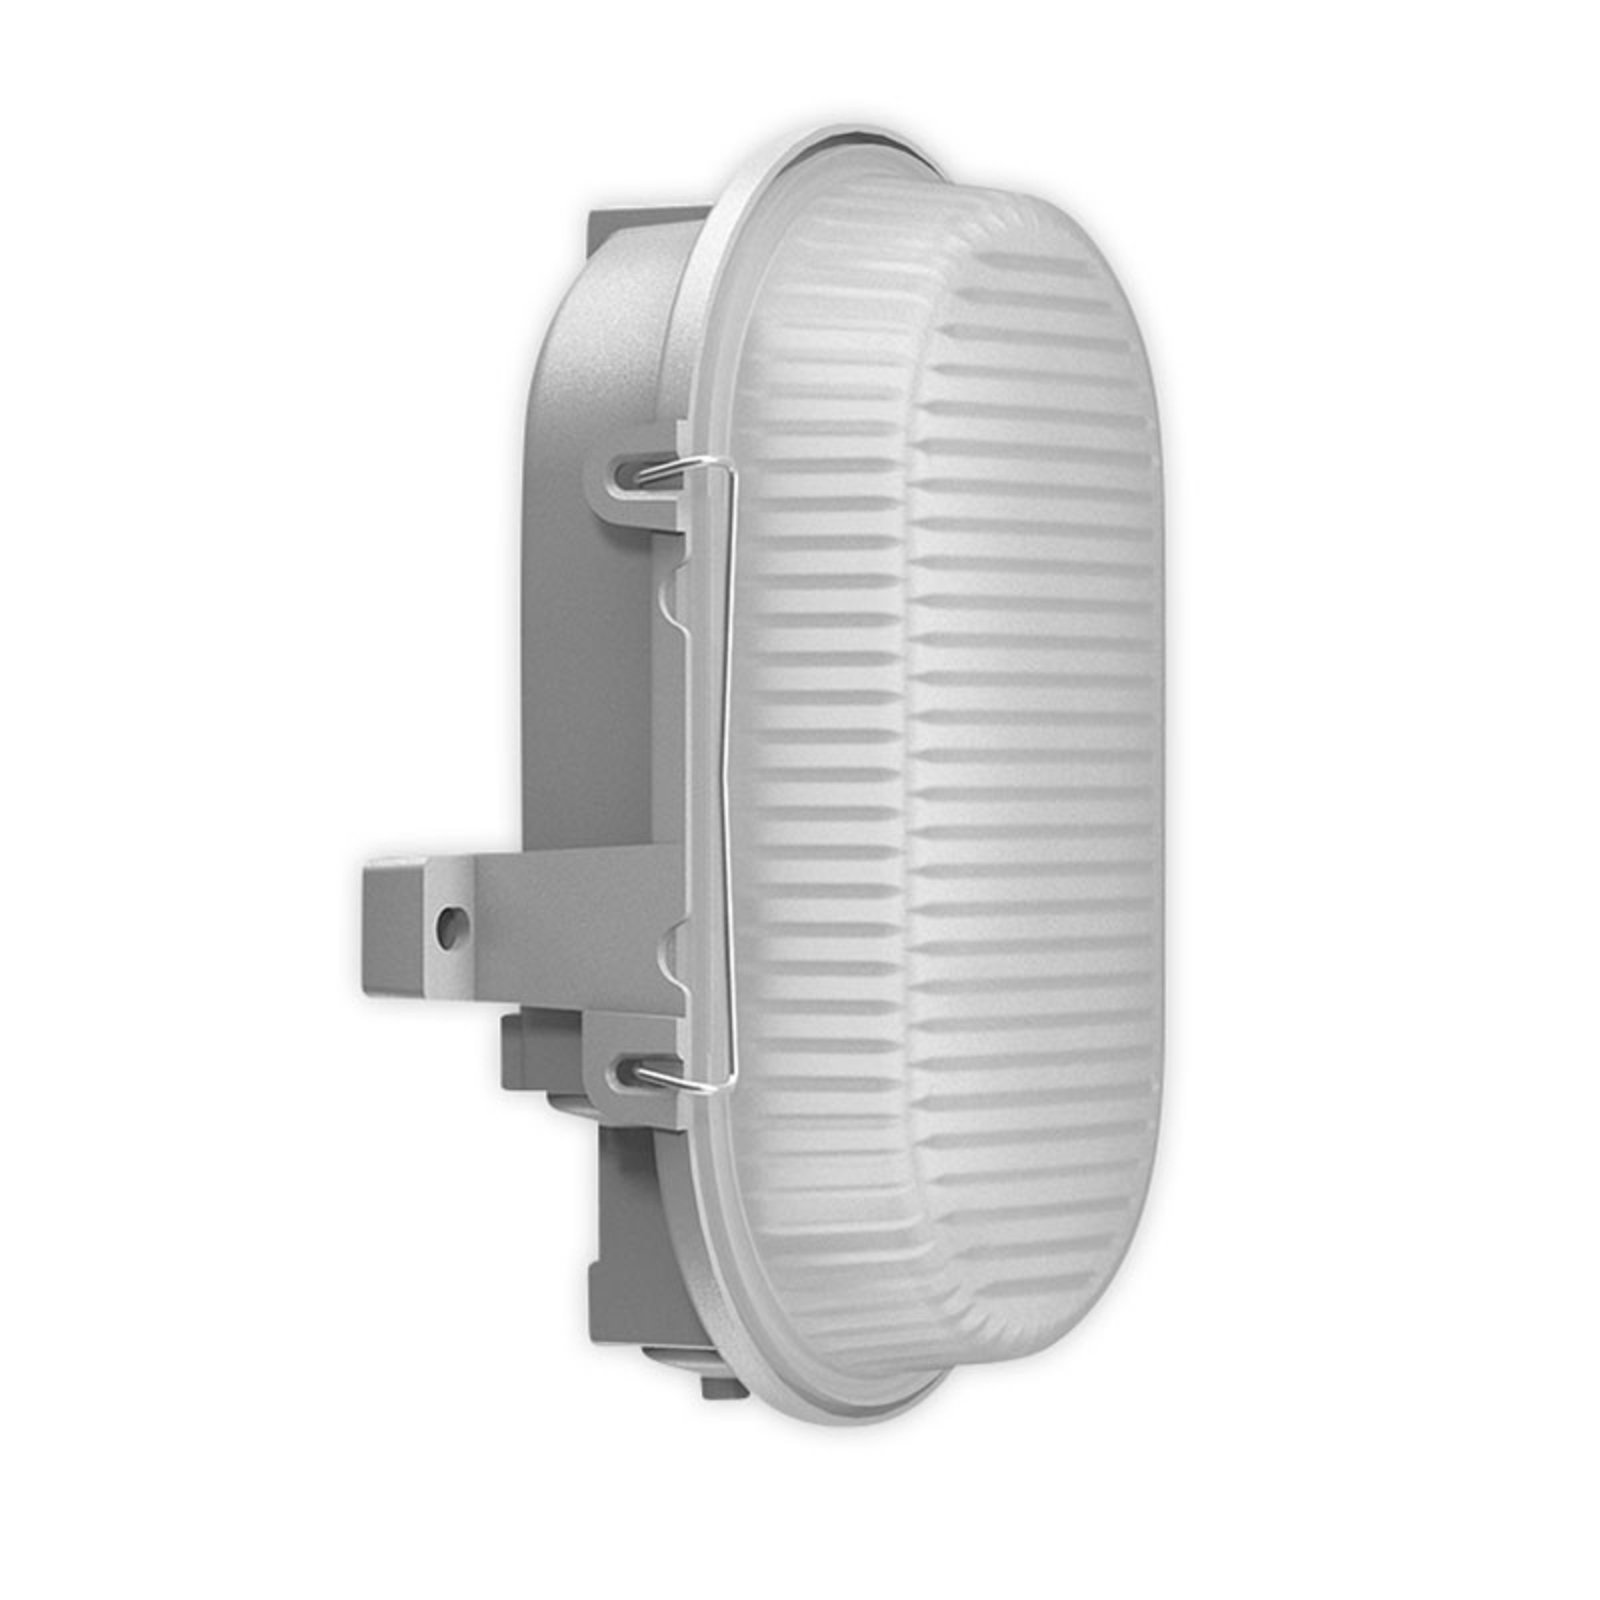 RZB Alu-Standard LED wall light, oval, IP66